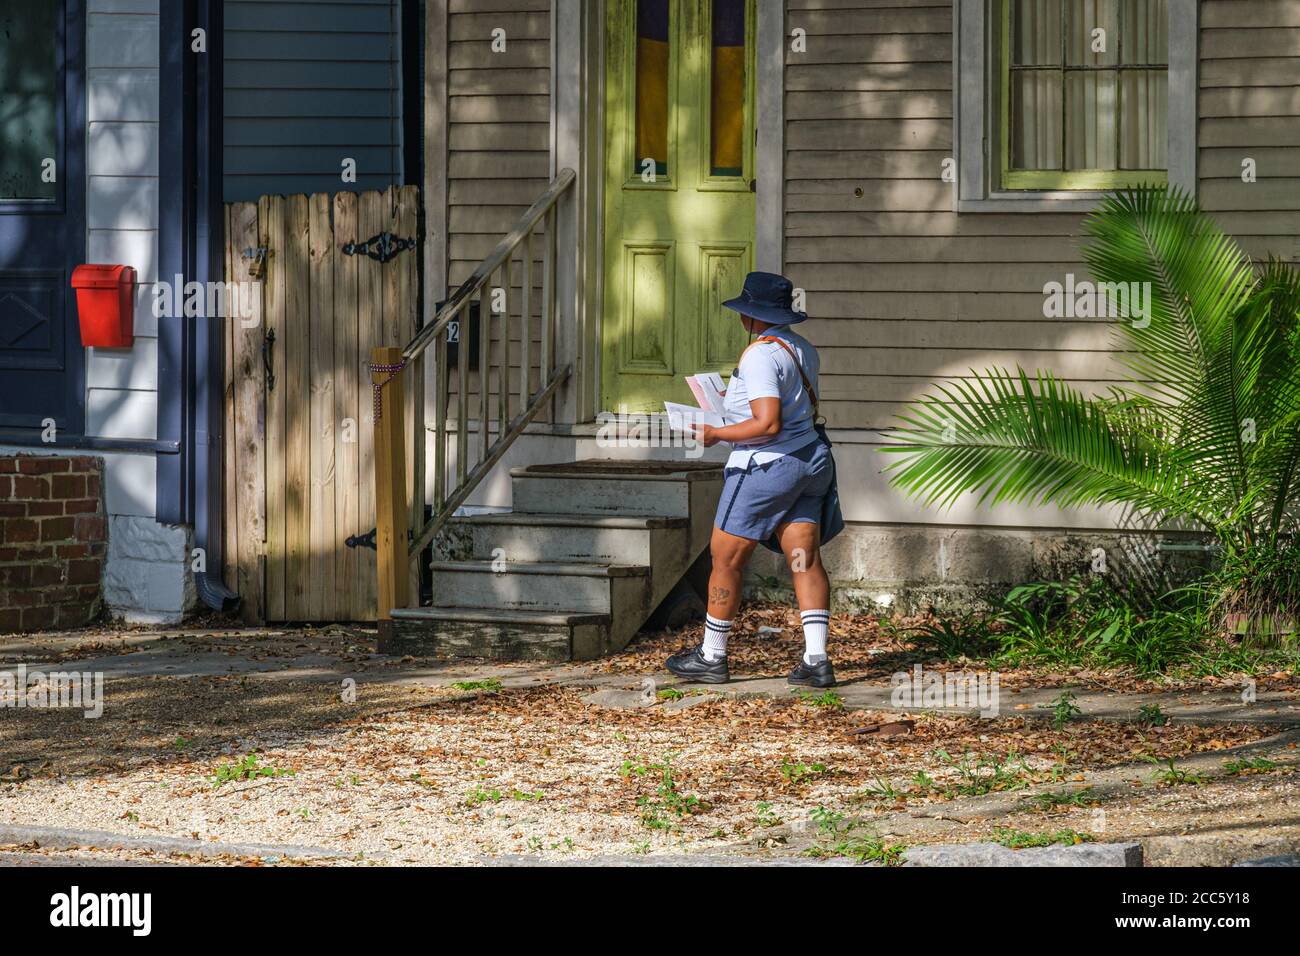 La Nouvelle-Orléans, Louisiane/Etats-Unis - 8/8/2020: Transporteur de courrier livrant le courrier sur Napoleon Avenue Banque D'Images